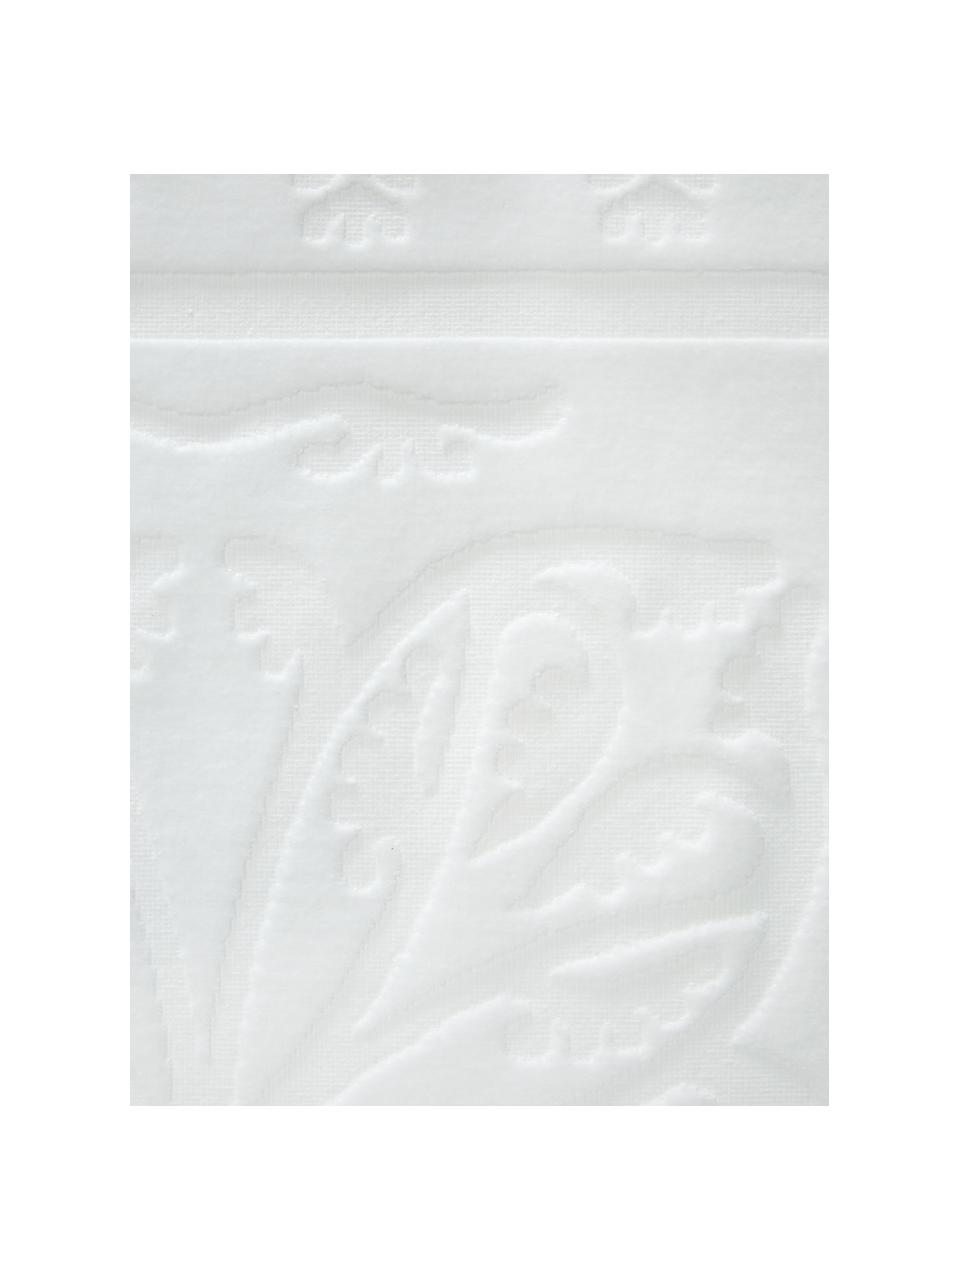 Handtuch Sumatra mit Hoch-Tief-Muster in verschiedenen Größen, Weiß, Gästehandtuch, B 30 x L 50 cm